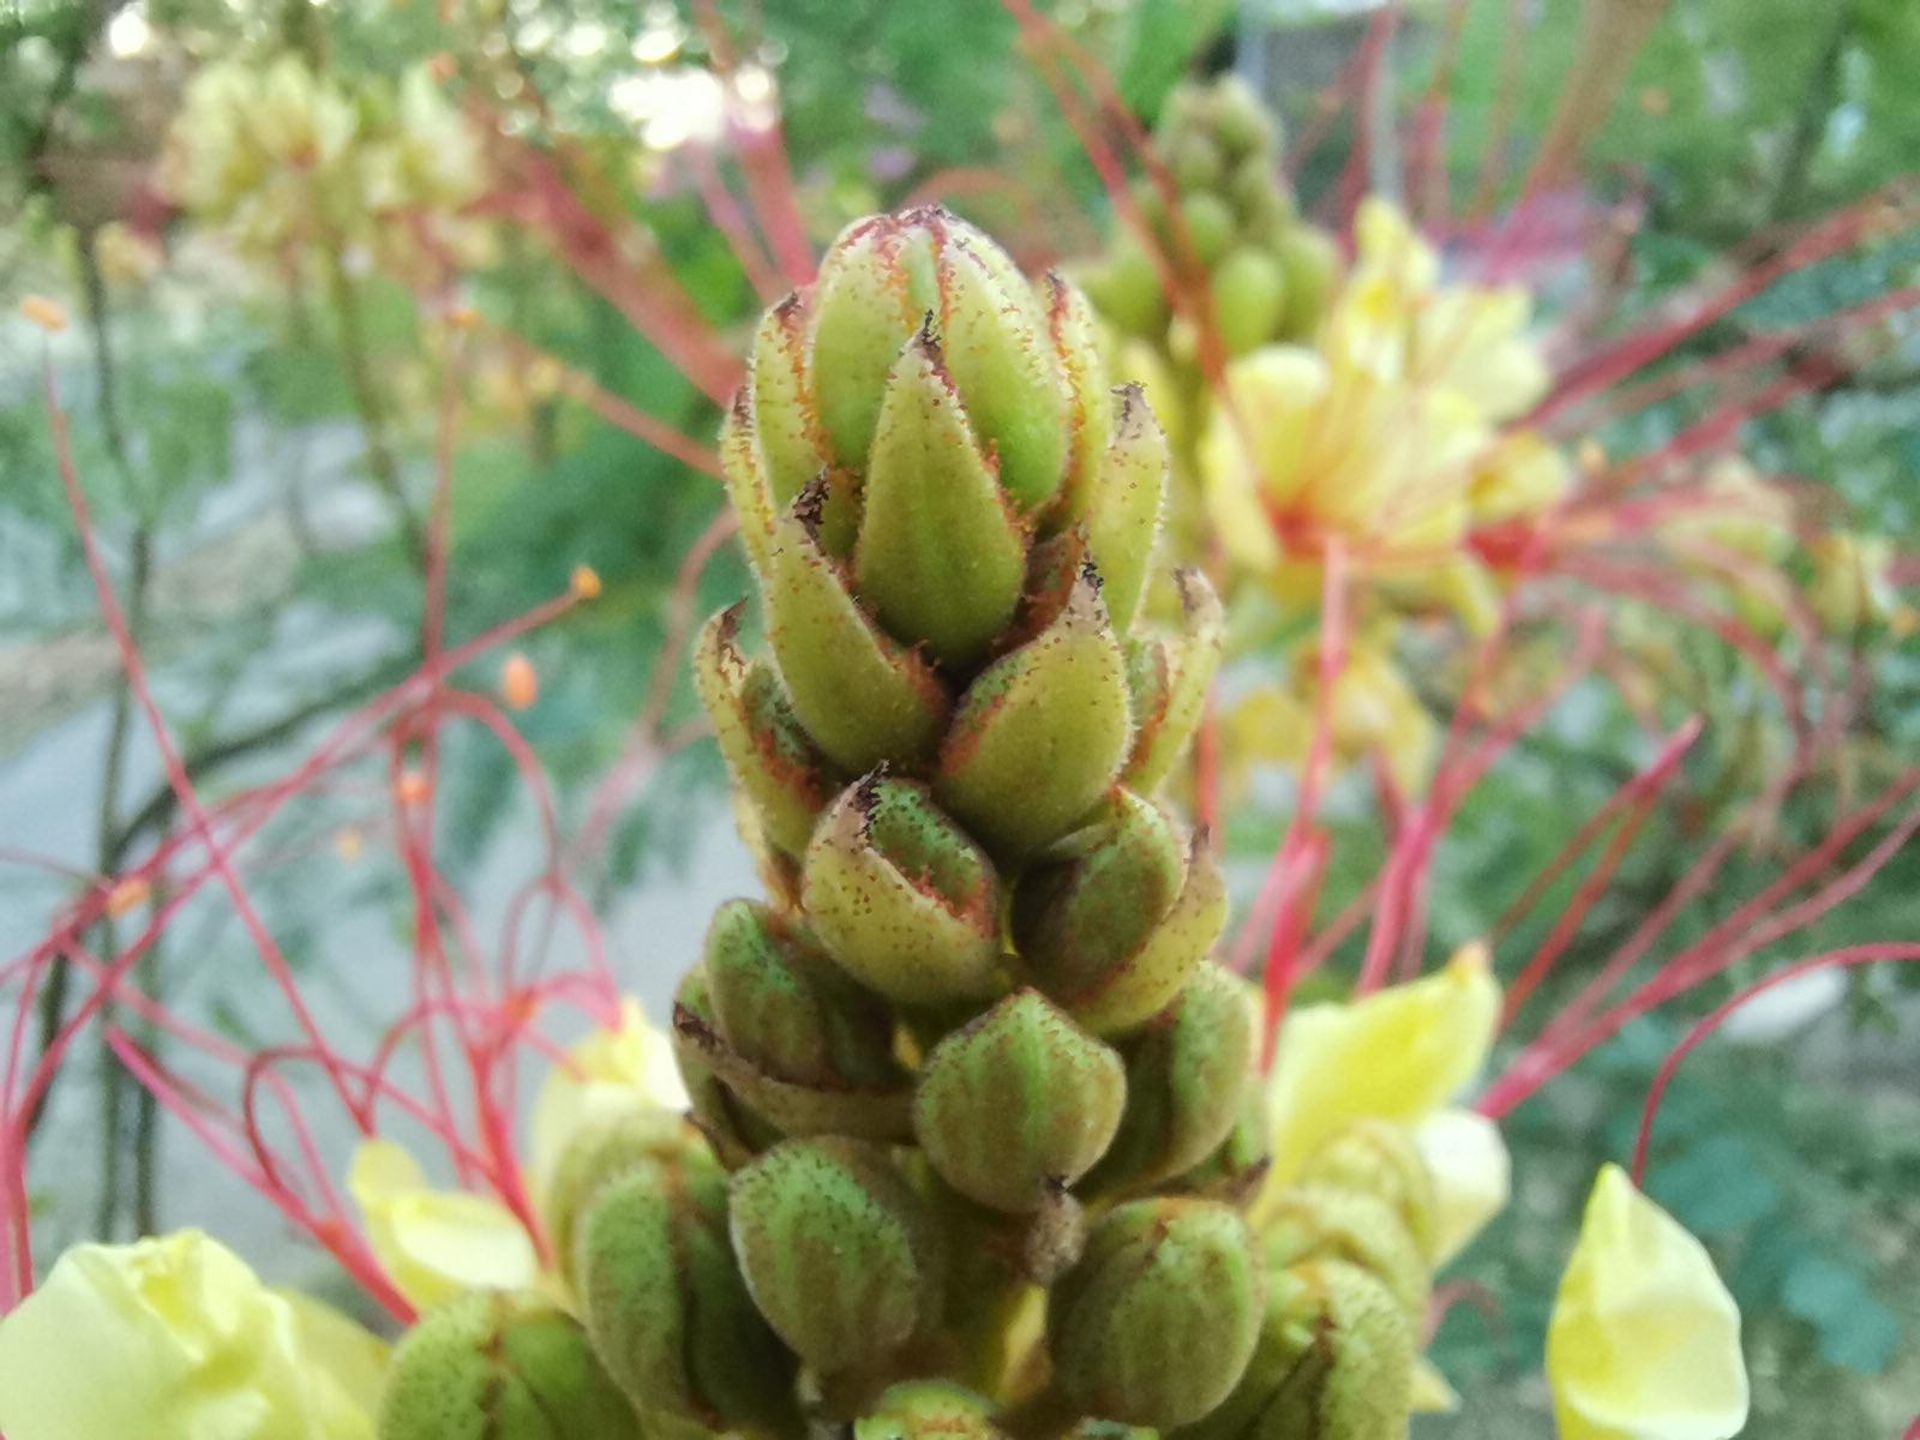 نمونه عکس ماکرو هواوی نوا 7 آی از گیاه